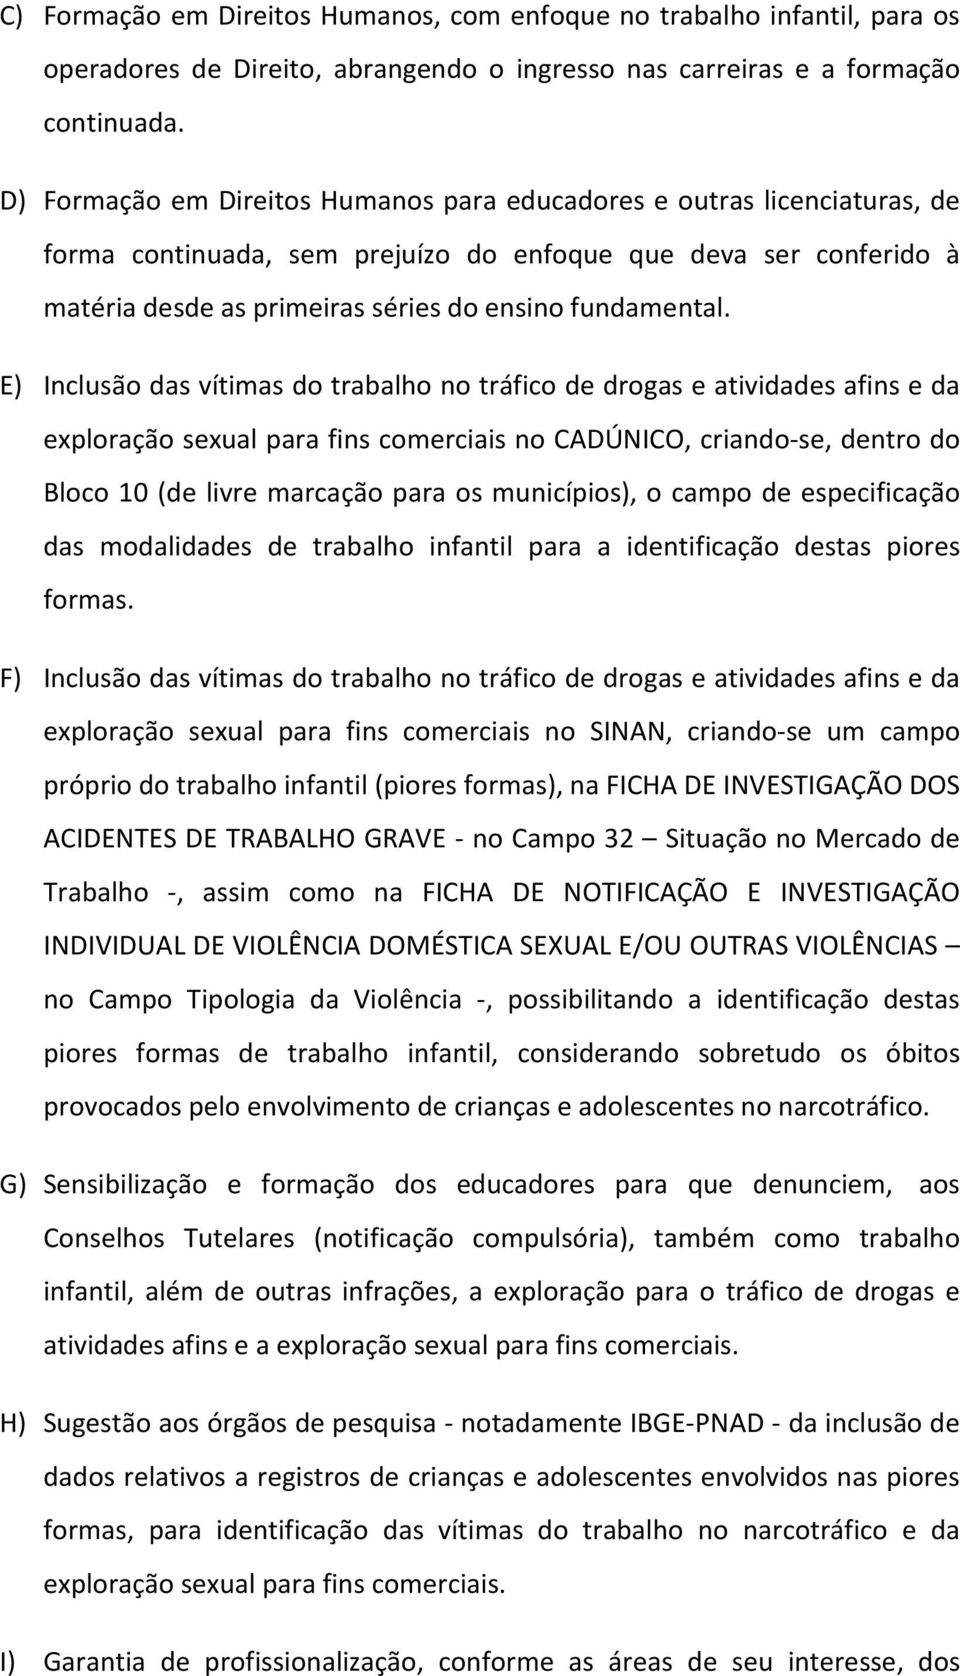 E) Inclusão das vítimas do trabalho no tráfico de drogas e atividades afins e da exploração sexual para fins comerciais no CADÚNICO, criando-se, dentro do Bloco 10 (de livre marcação para os